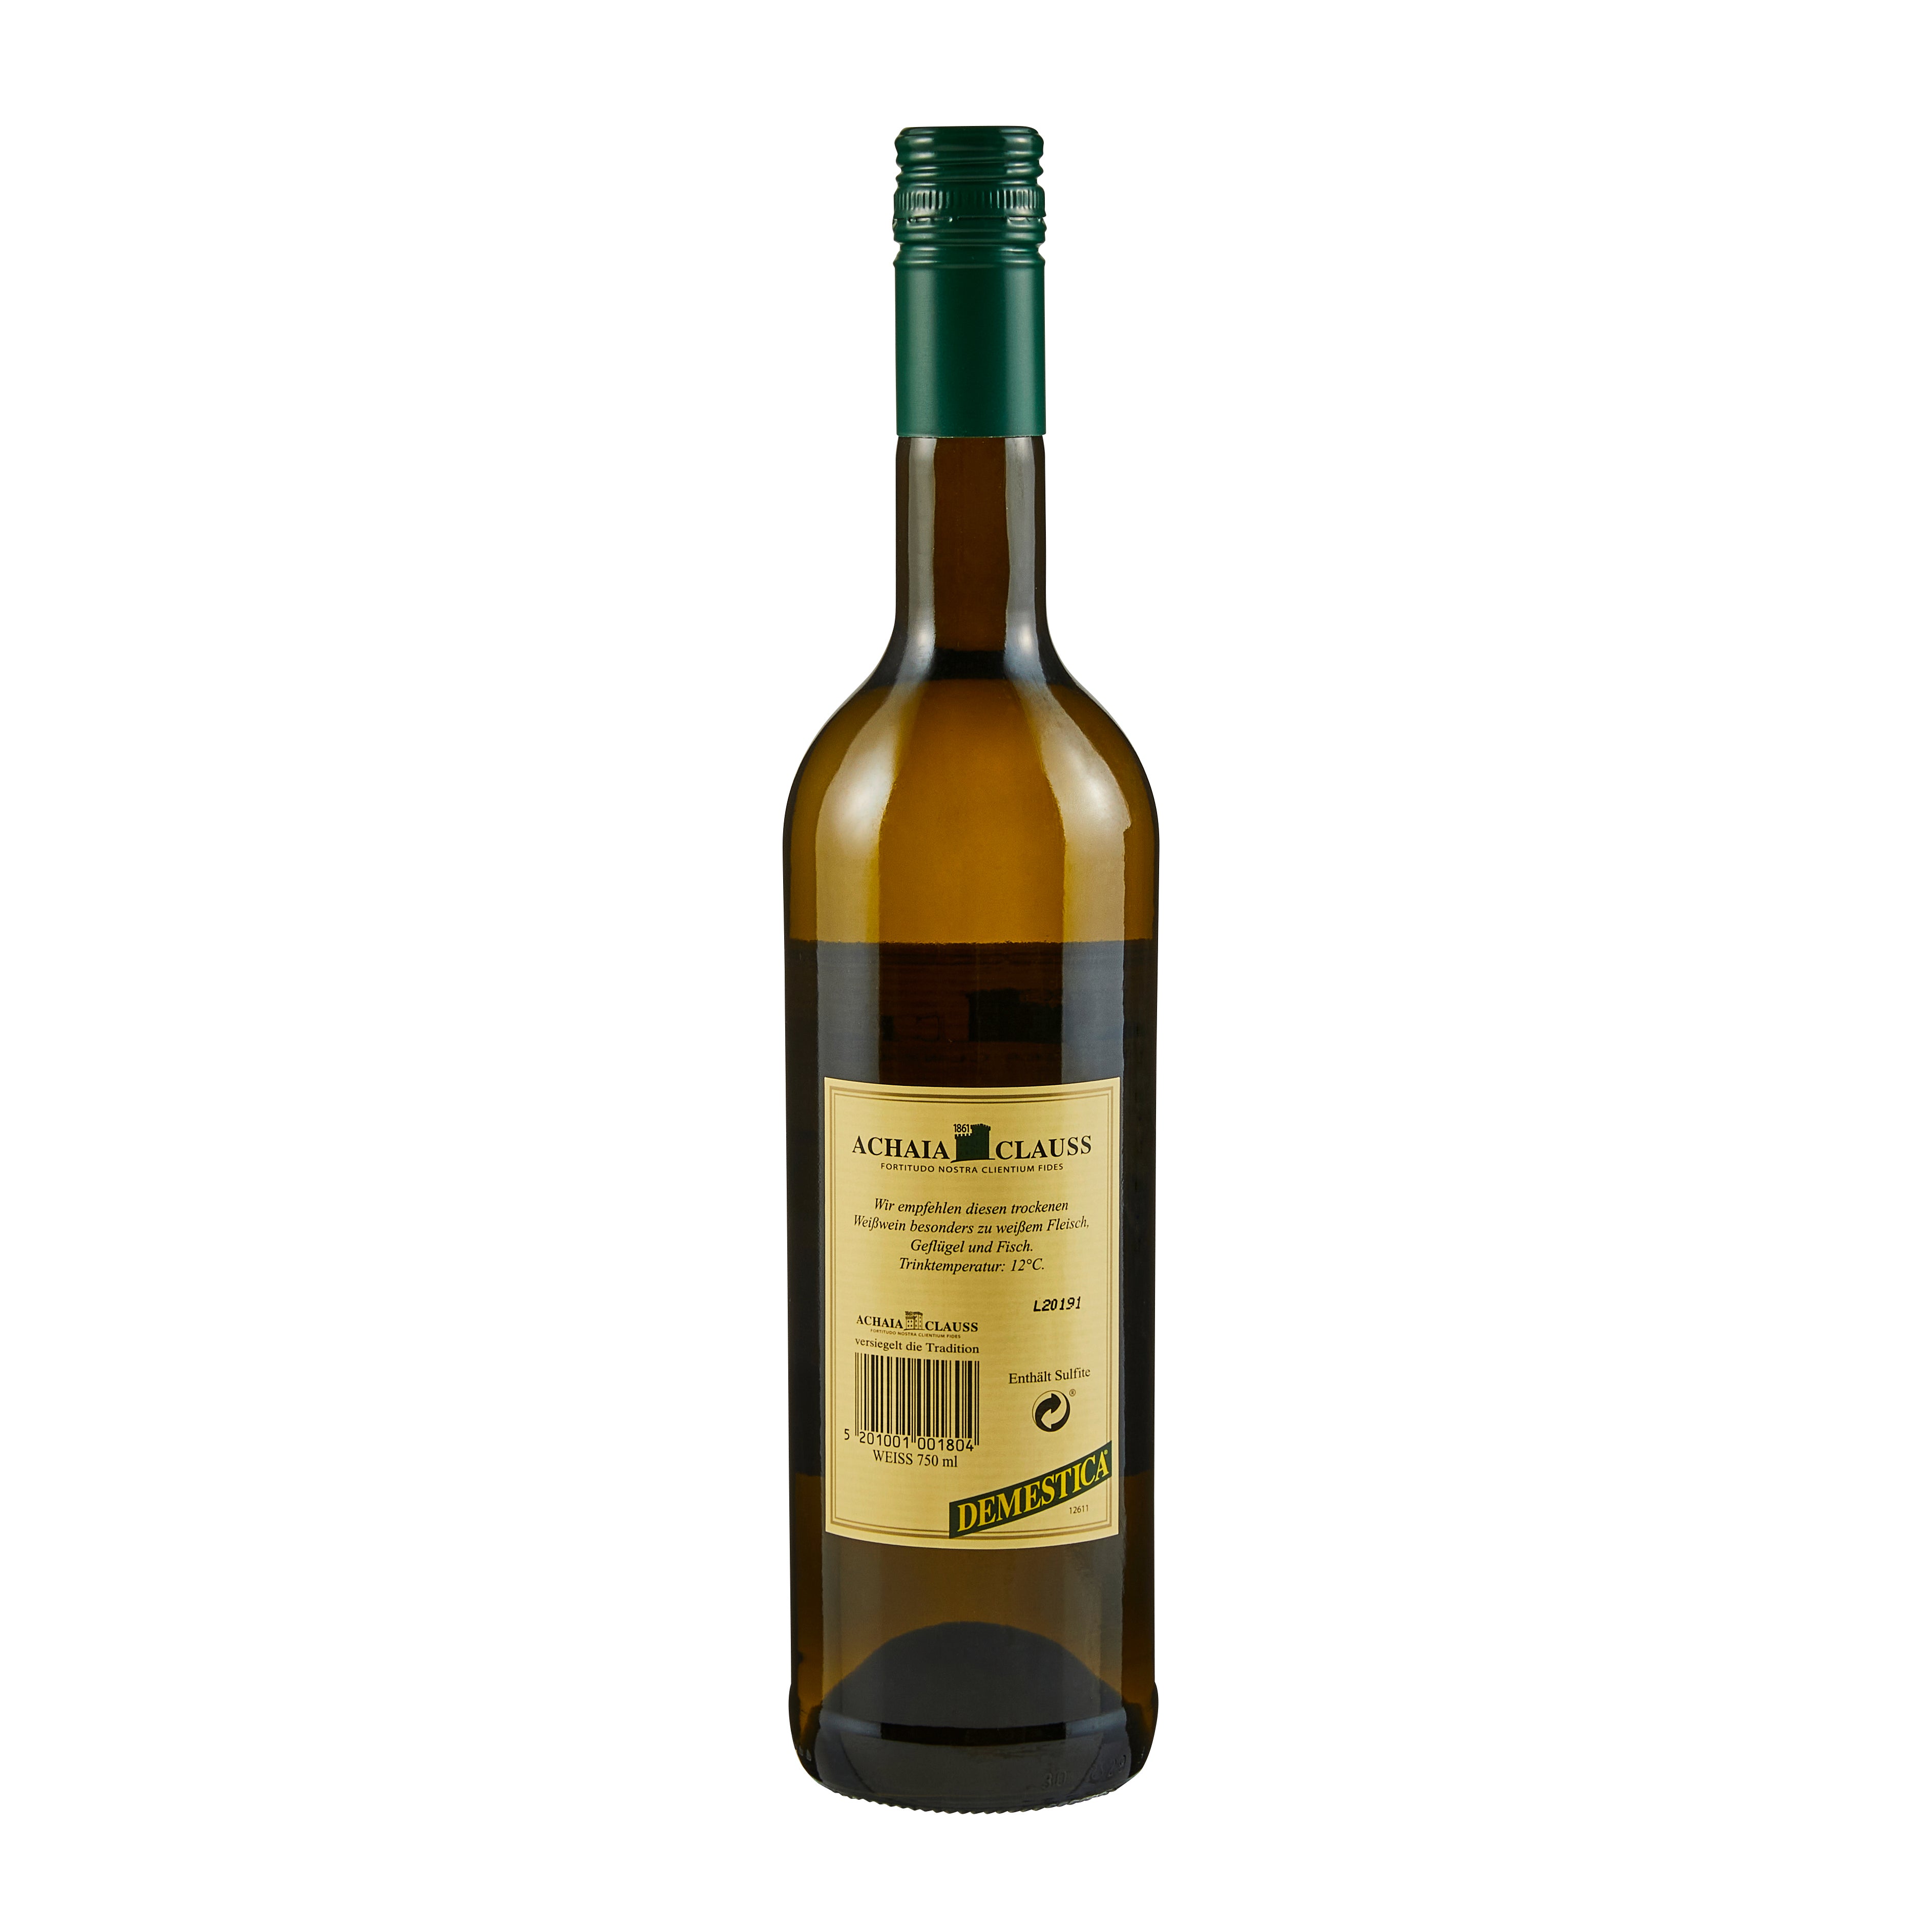 Achaia Clauss Demestica Weißwein trocken 0,75 l